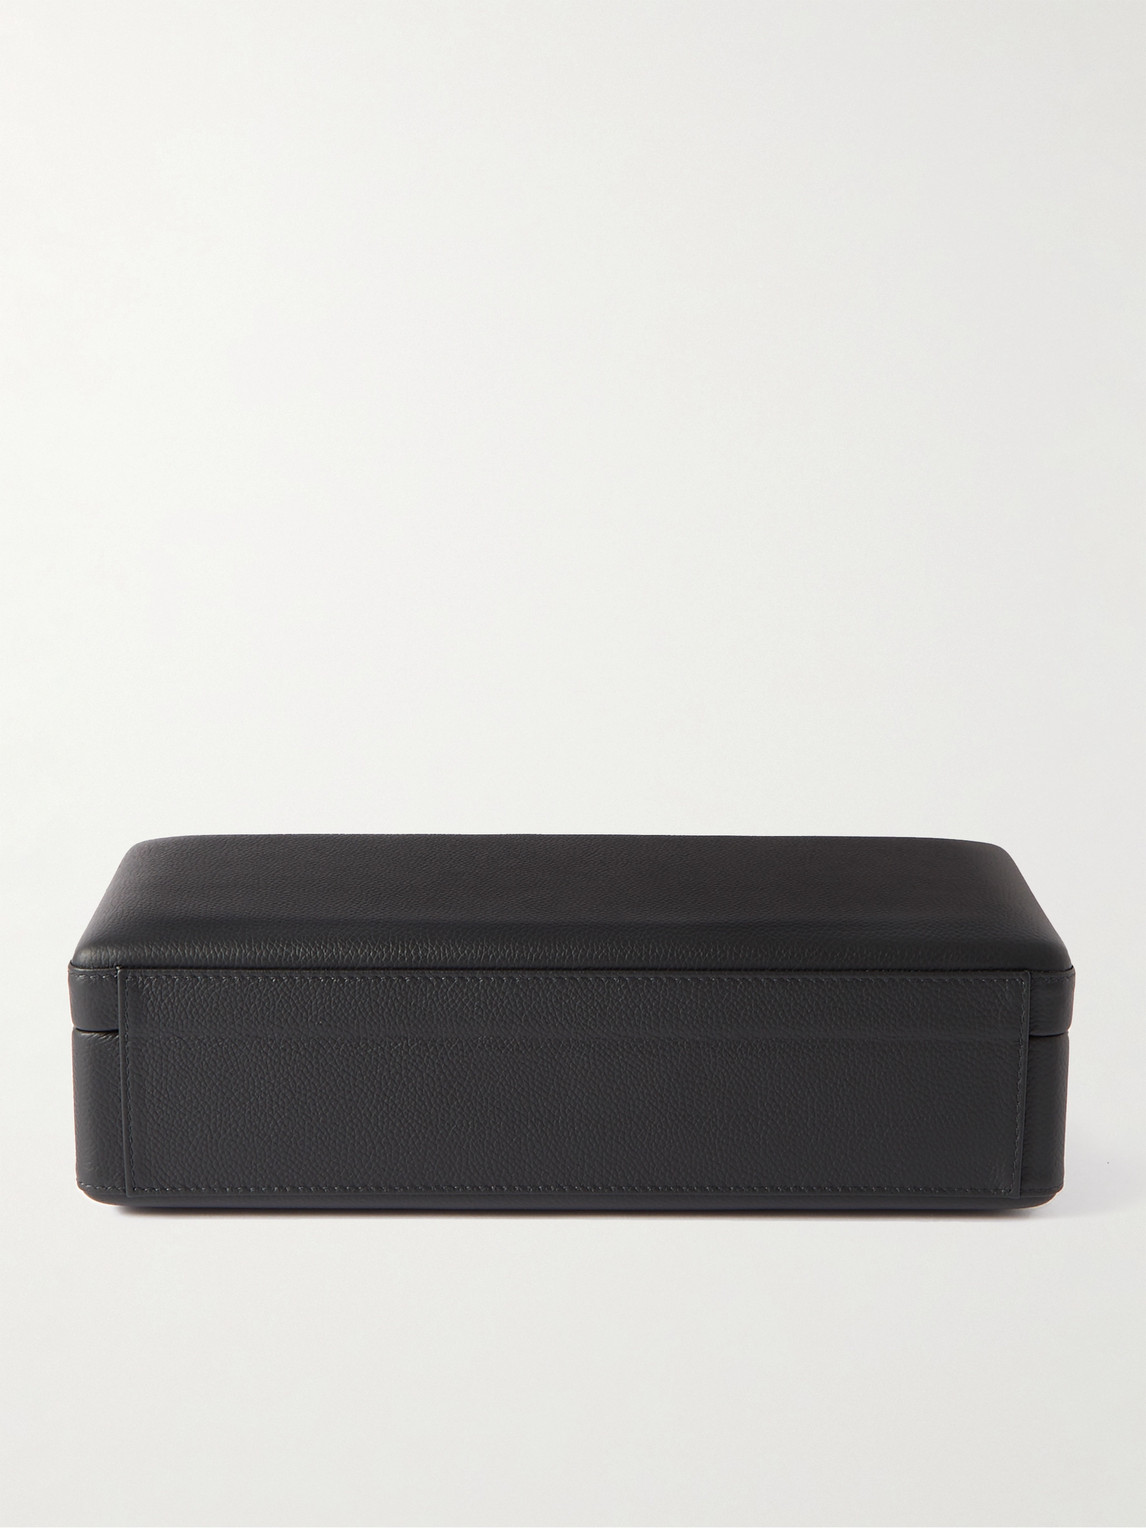 Shop Scatola Del Tempo Valigetta 4 Full-grain Leather Watch Box In Black